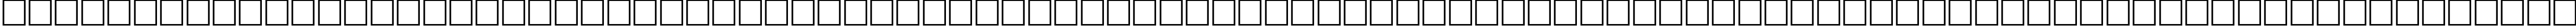 Пример написания русского алфавита шрифтом WP Hebrew David